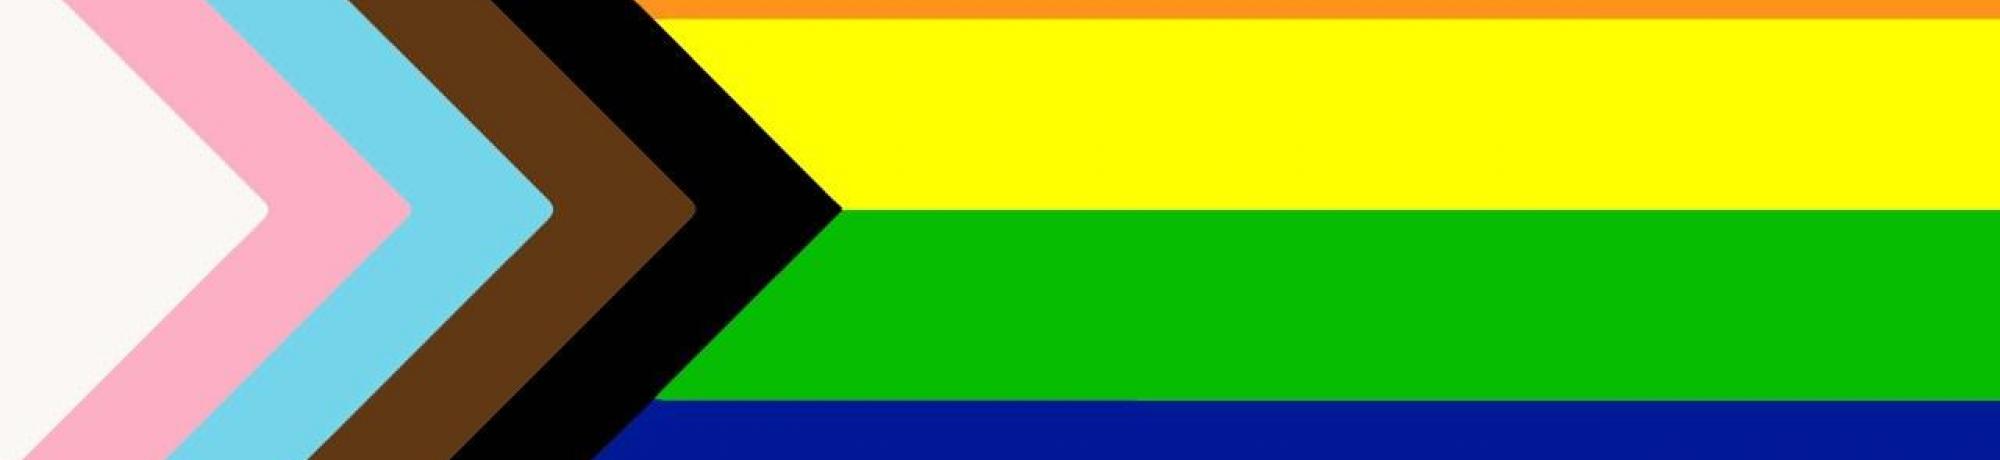 New pride flag designed by Daniel Quasar